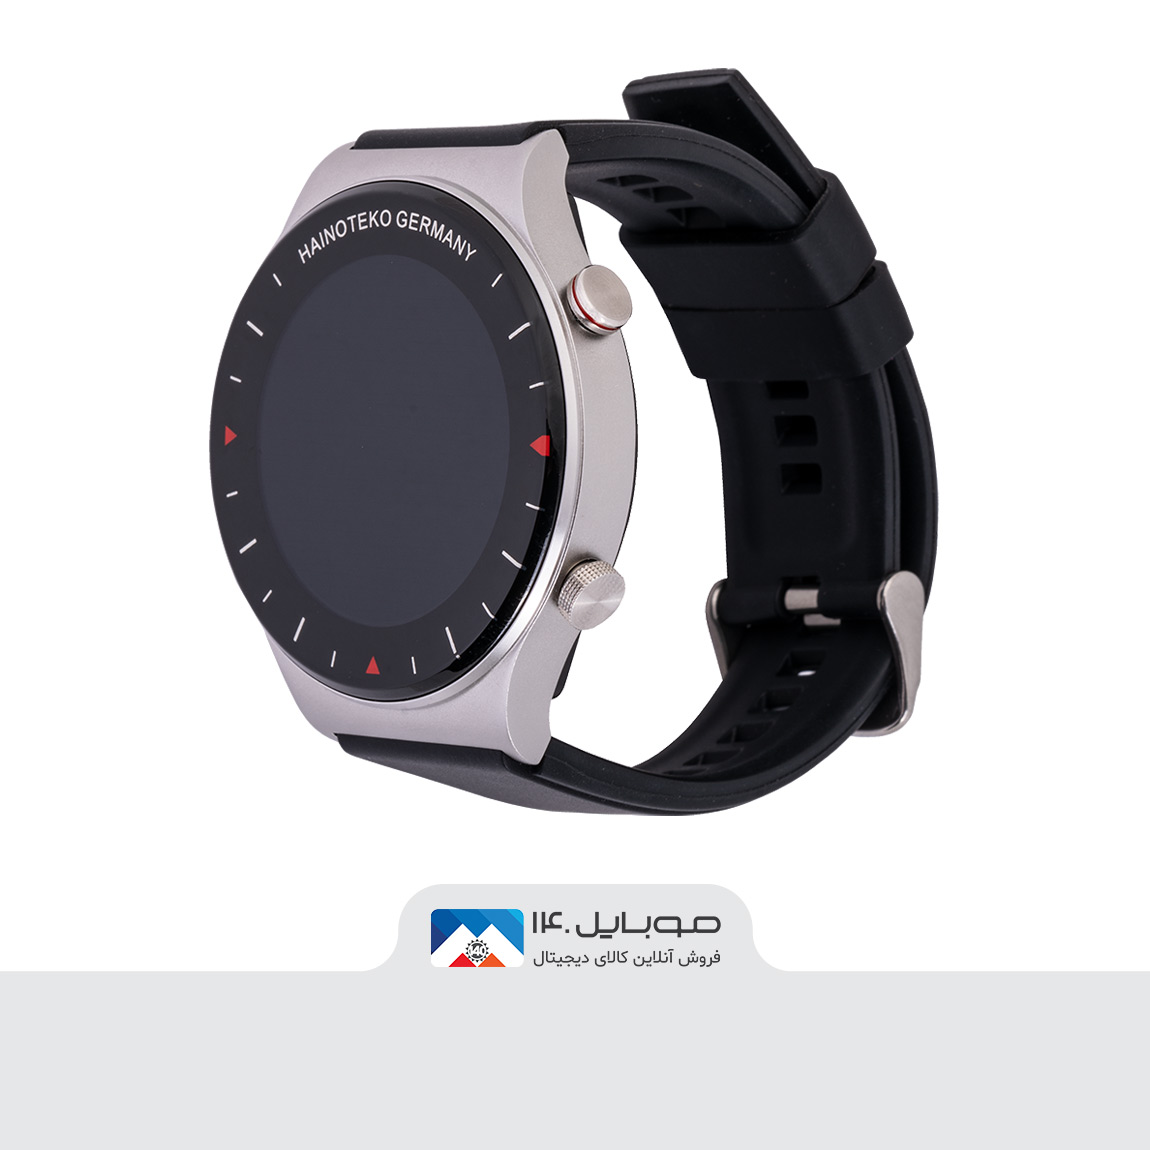 Hainoteko C5 Smart Watch 6